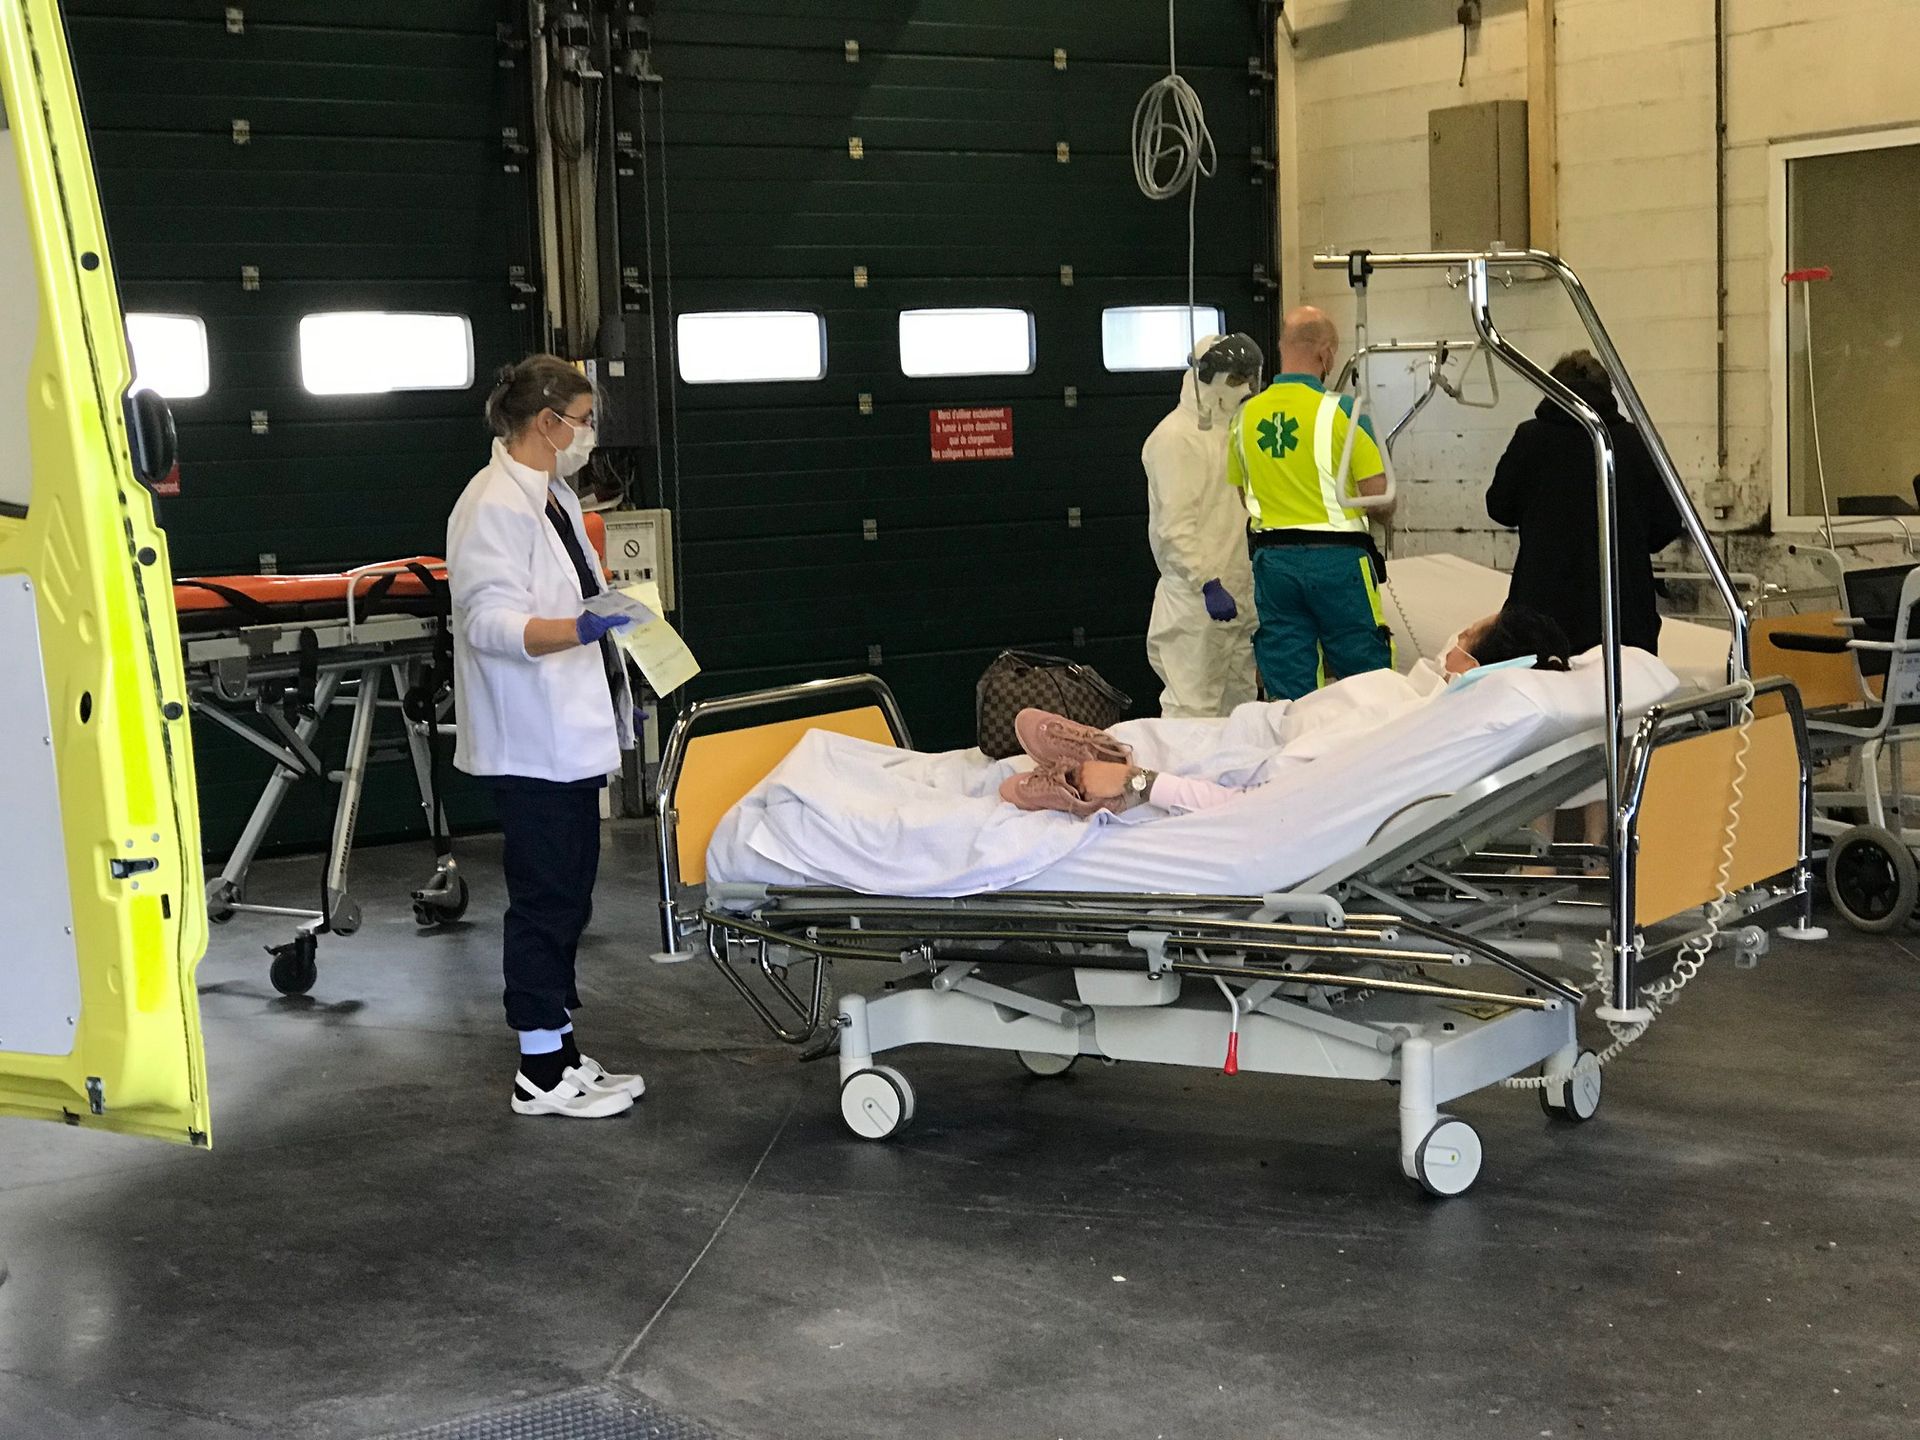 La patiente est prise en charge par des infirmiers à l'hôpital de la Citadelle, dans un garage qui a été aménagé spécialement pour les cas suspects « Covid-19 ». 